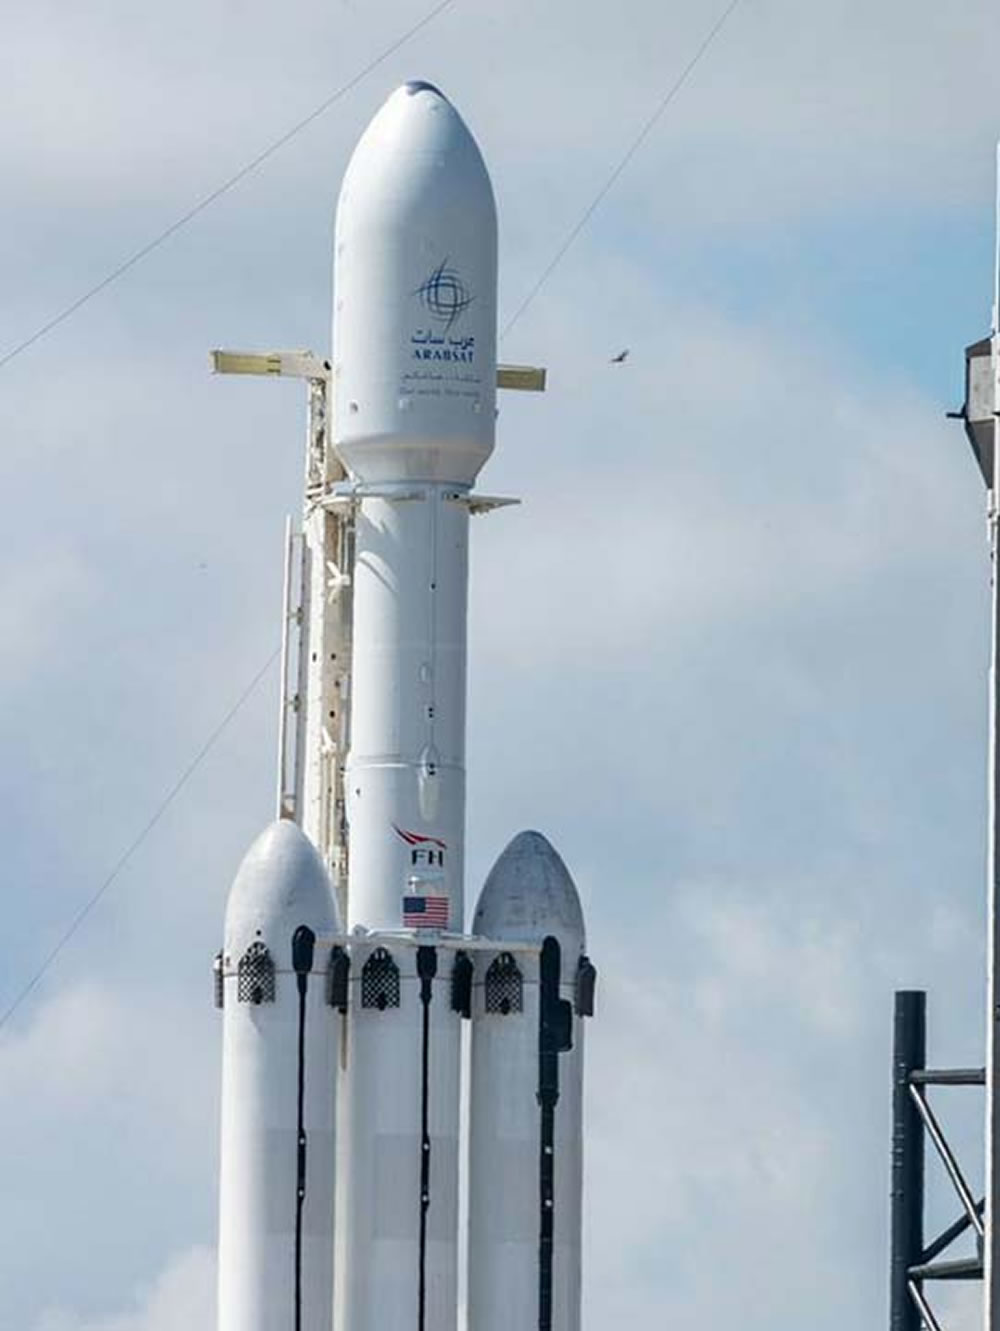 Por problemas técnicos de Boeing, SpaceX, Nasa le adjudica 3 viajes más a SpaceX